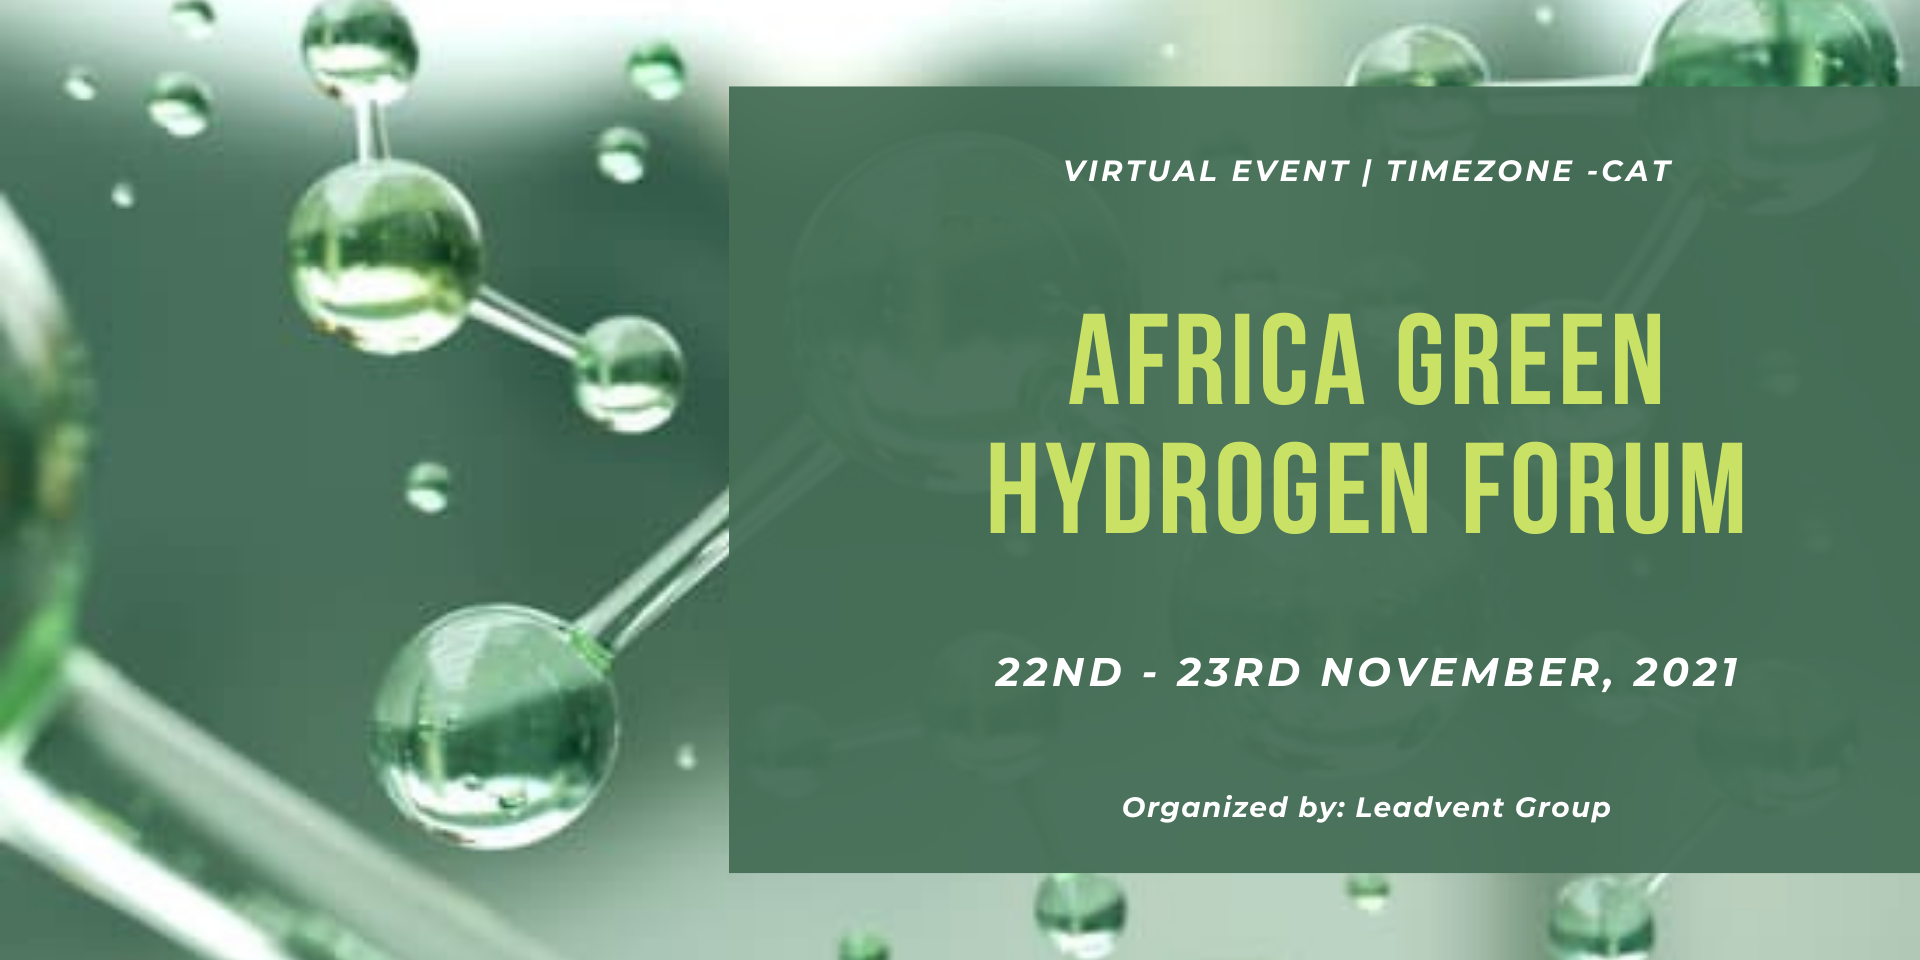 Africa Green Hydrogen Forum